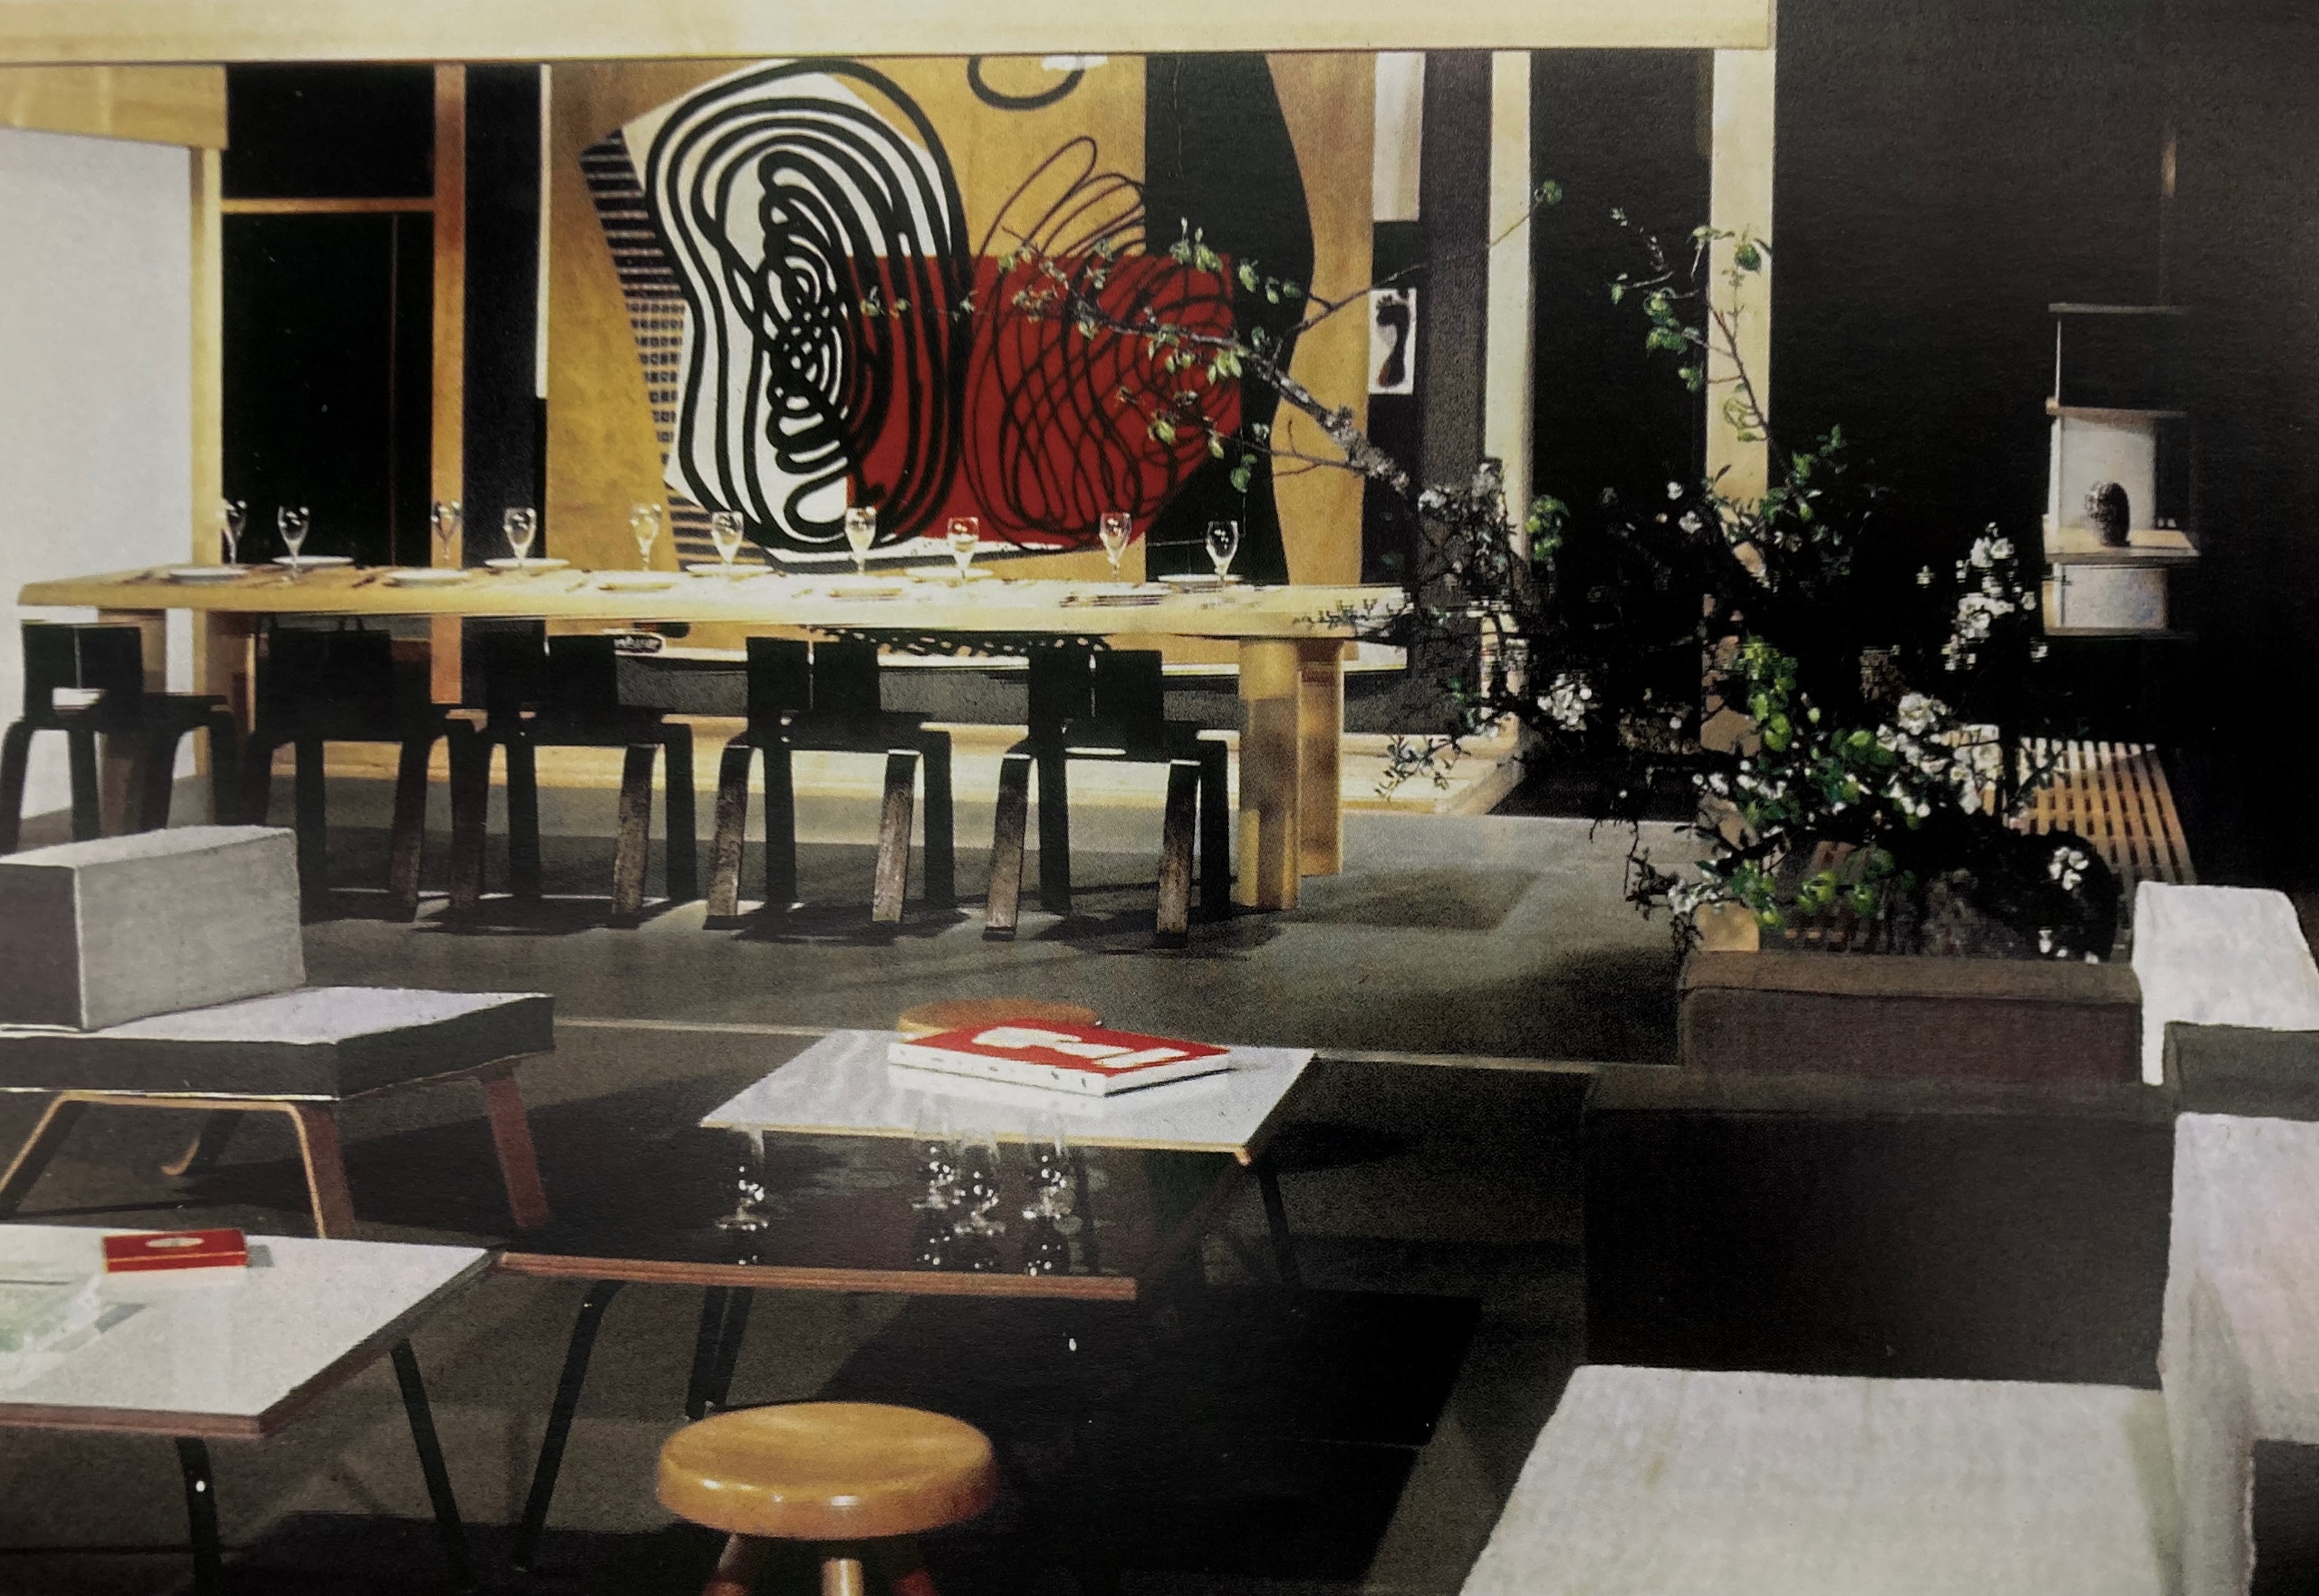 Photographie de l’exposition « proposition d’une synthèse des arts » à tokyo en 1955 montrant la salle de réception et la salle à manger avec une tapisserie de le corbusier